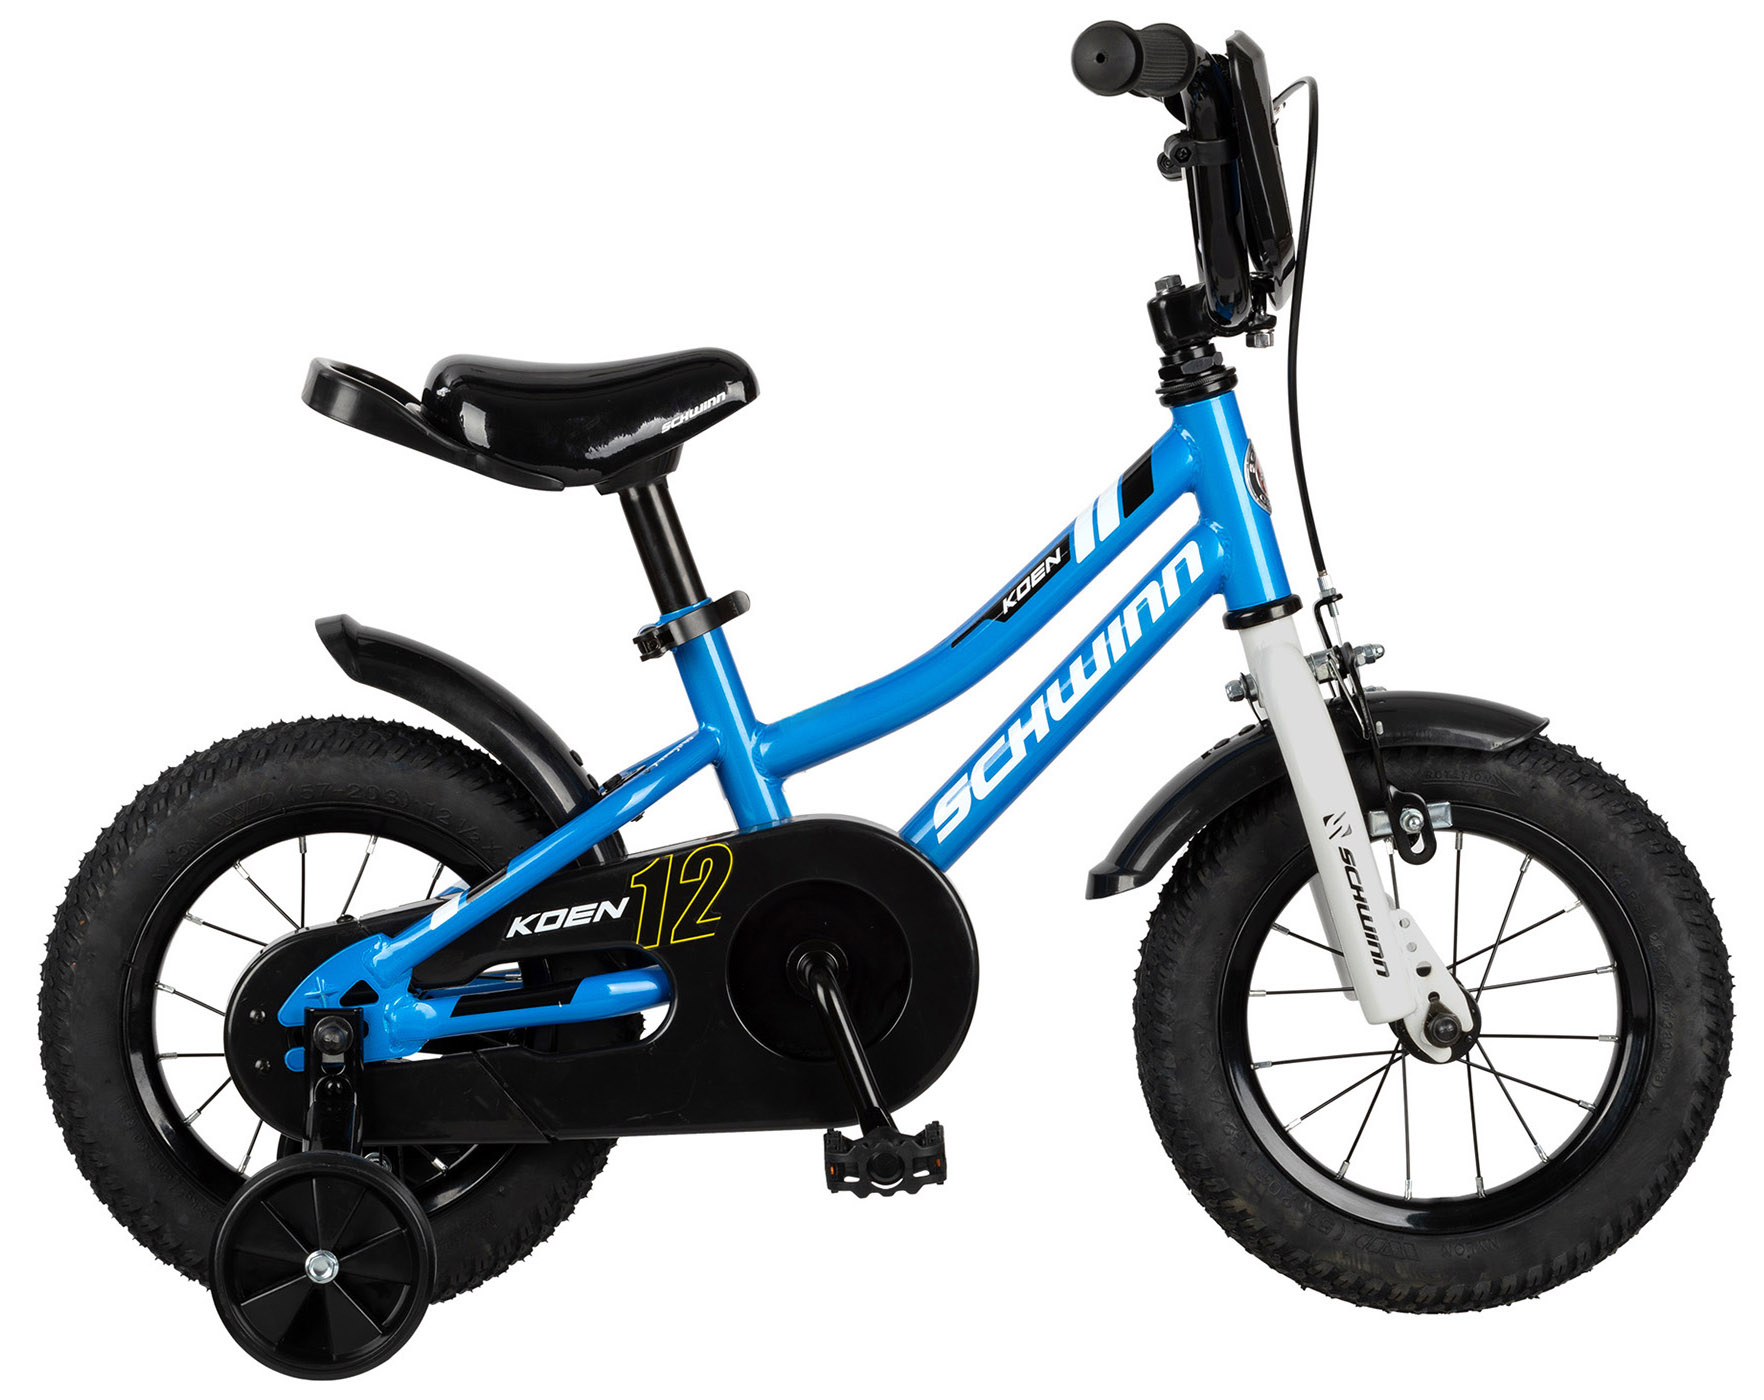  Отзывы о Детском велосипеде Schwinn Koen 12 2020